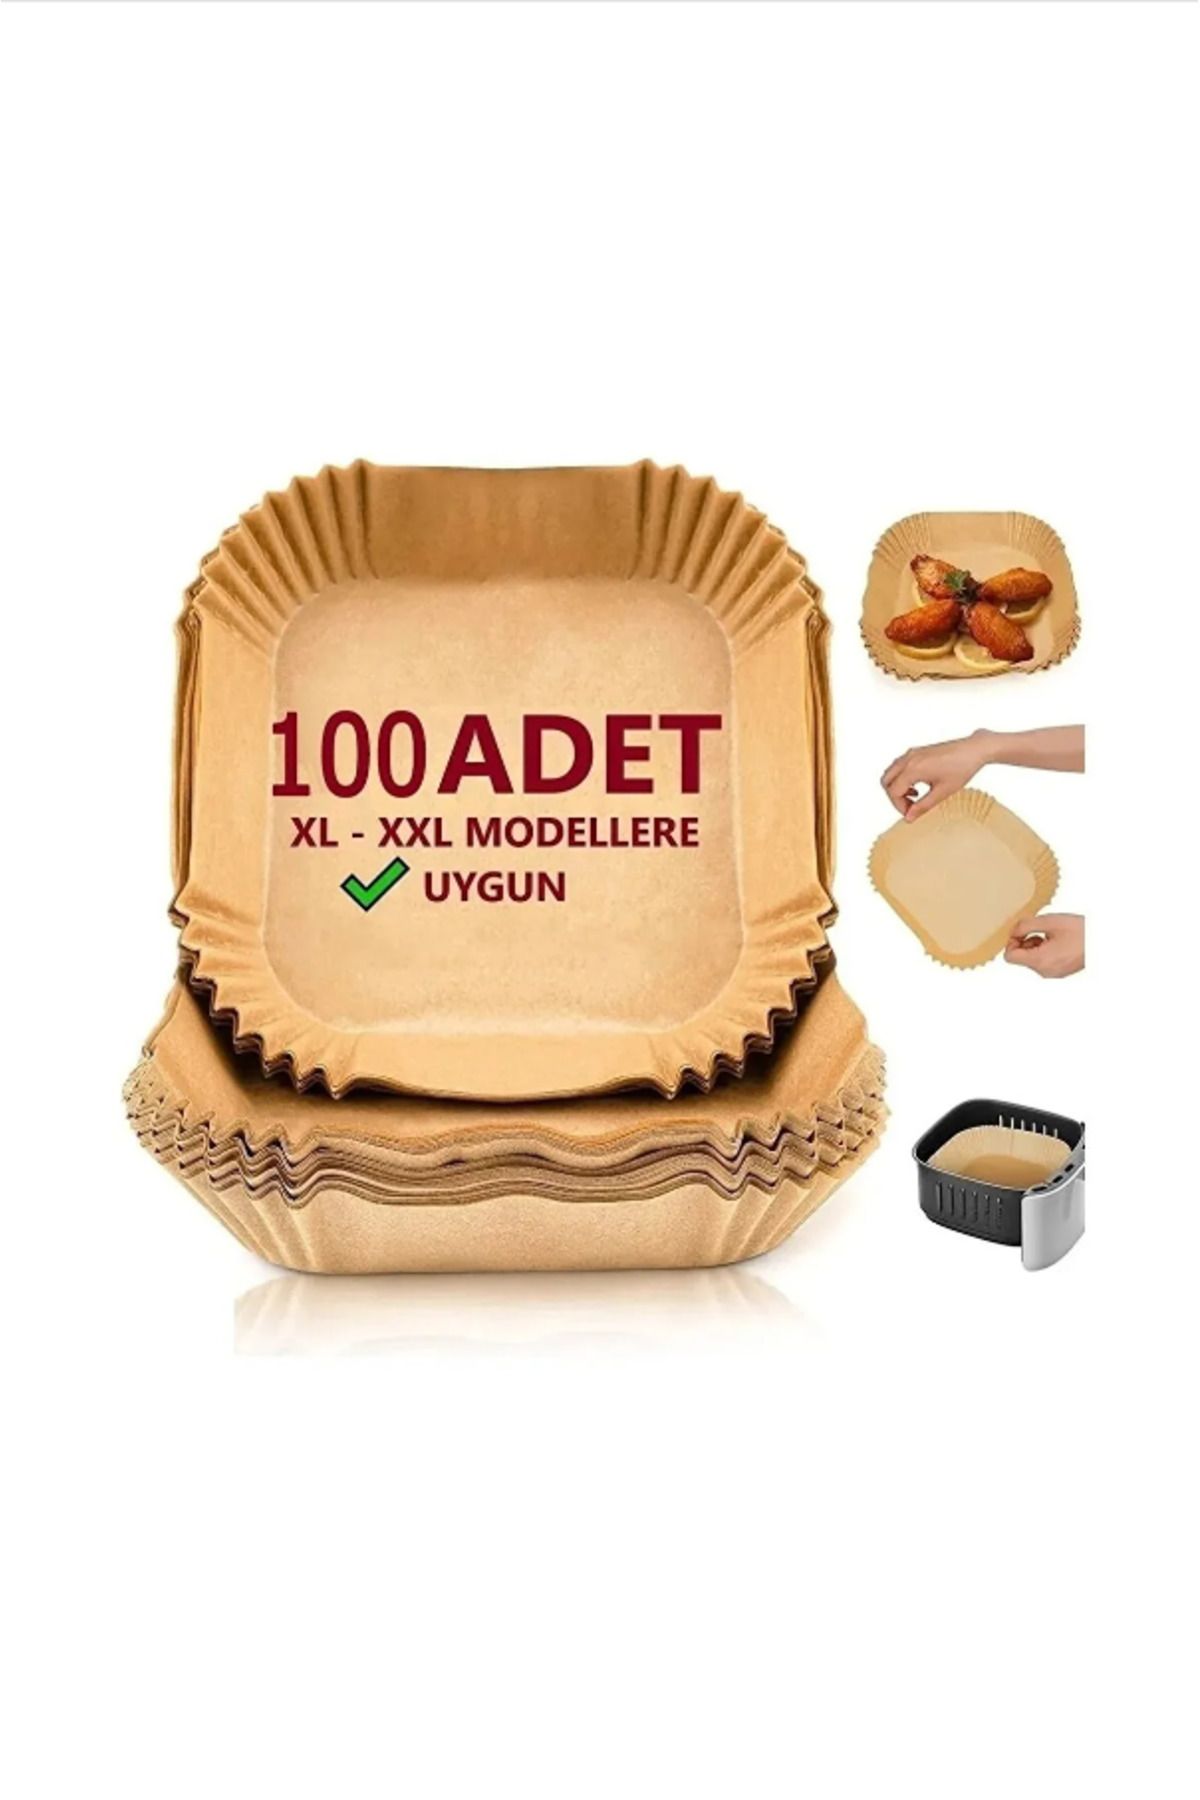 Aygoren Home 100 Adet Airfryer Pişirme Kağıdı Xl-xxl-büyük Boy Hava Fritöz Kağıdı, Fırın Kağıdı Tek Kullanım